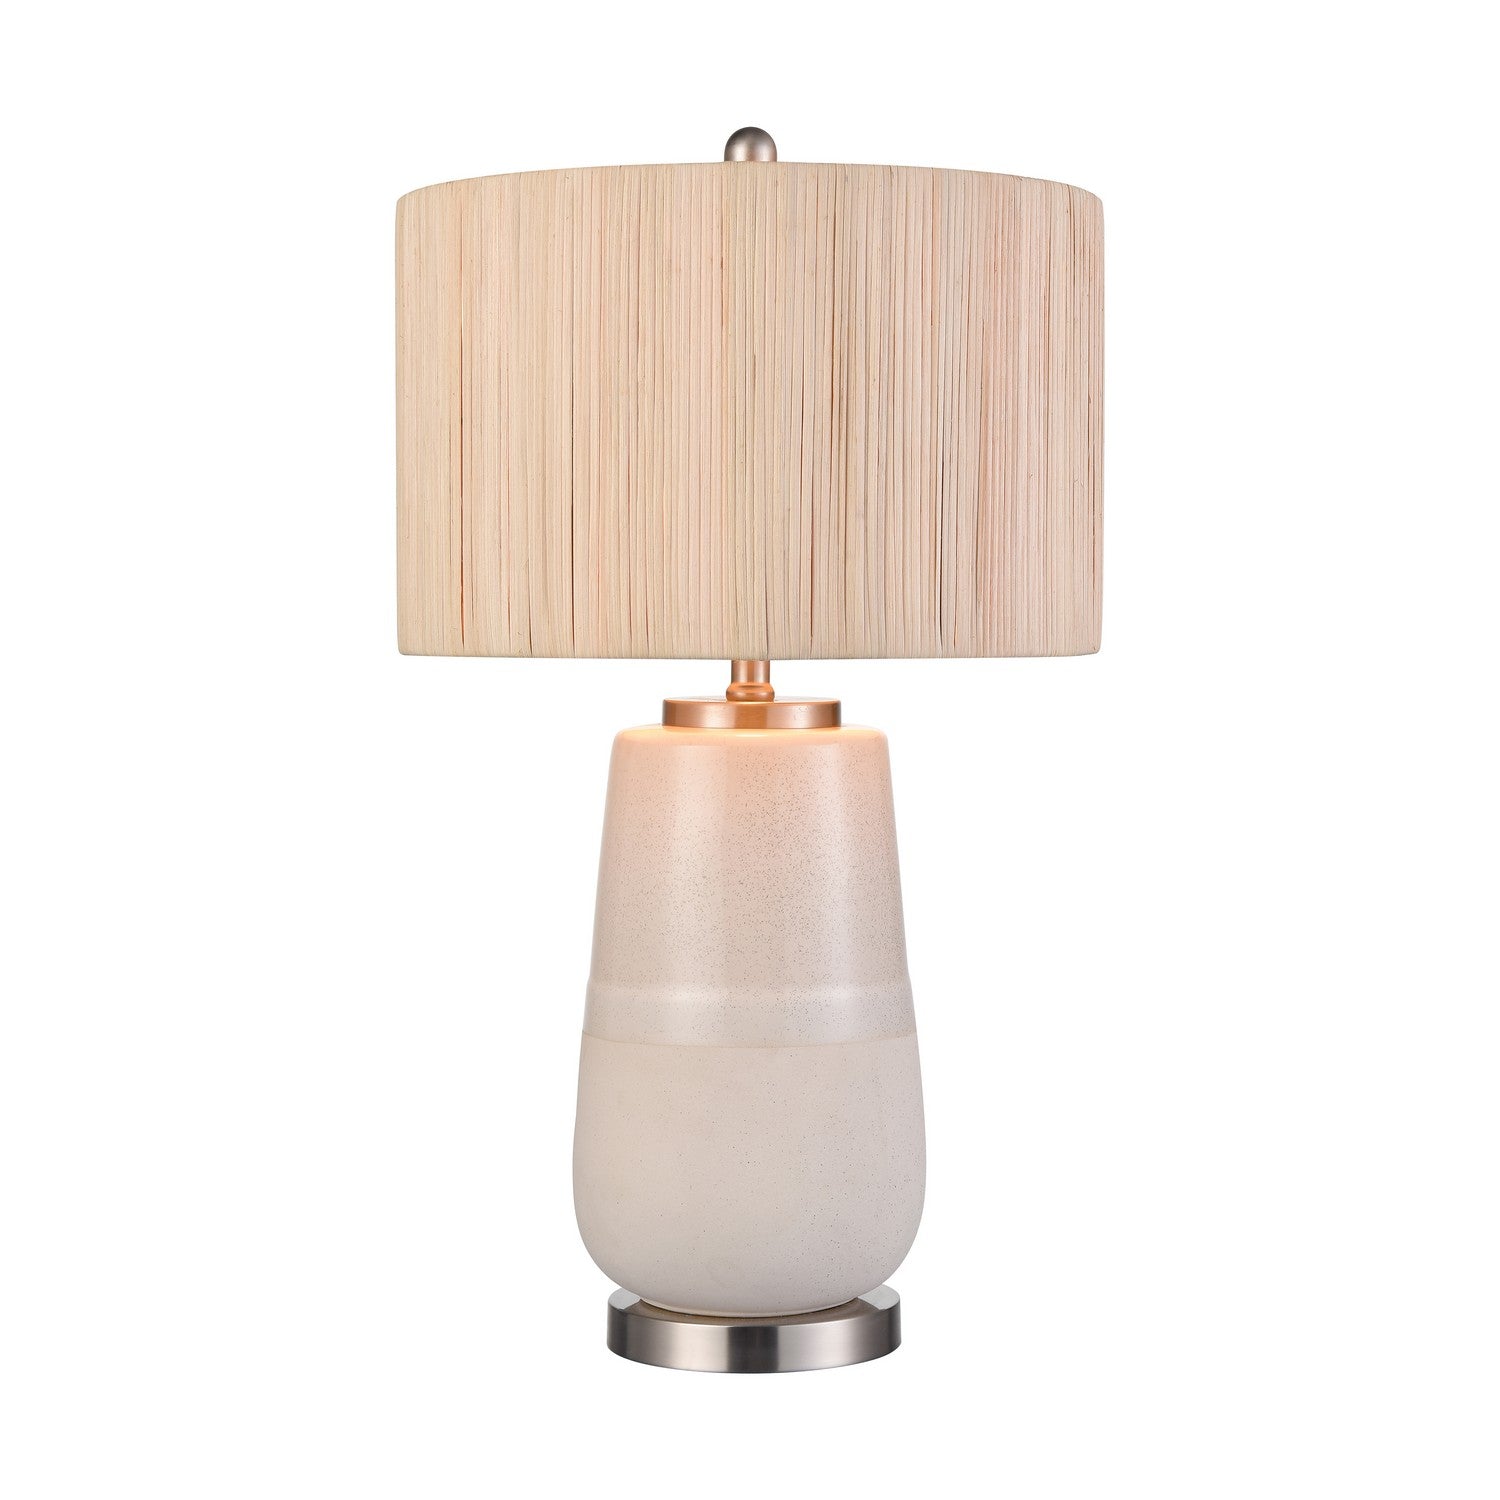 ELK Home - S0019-11169-LED - LED Table Lamp - Babcock - White Glazed